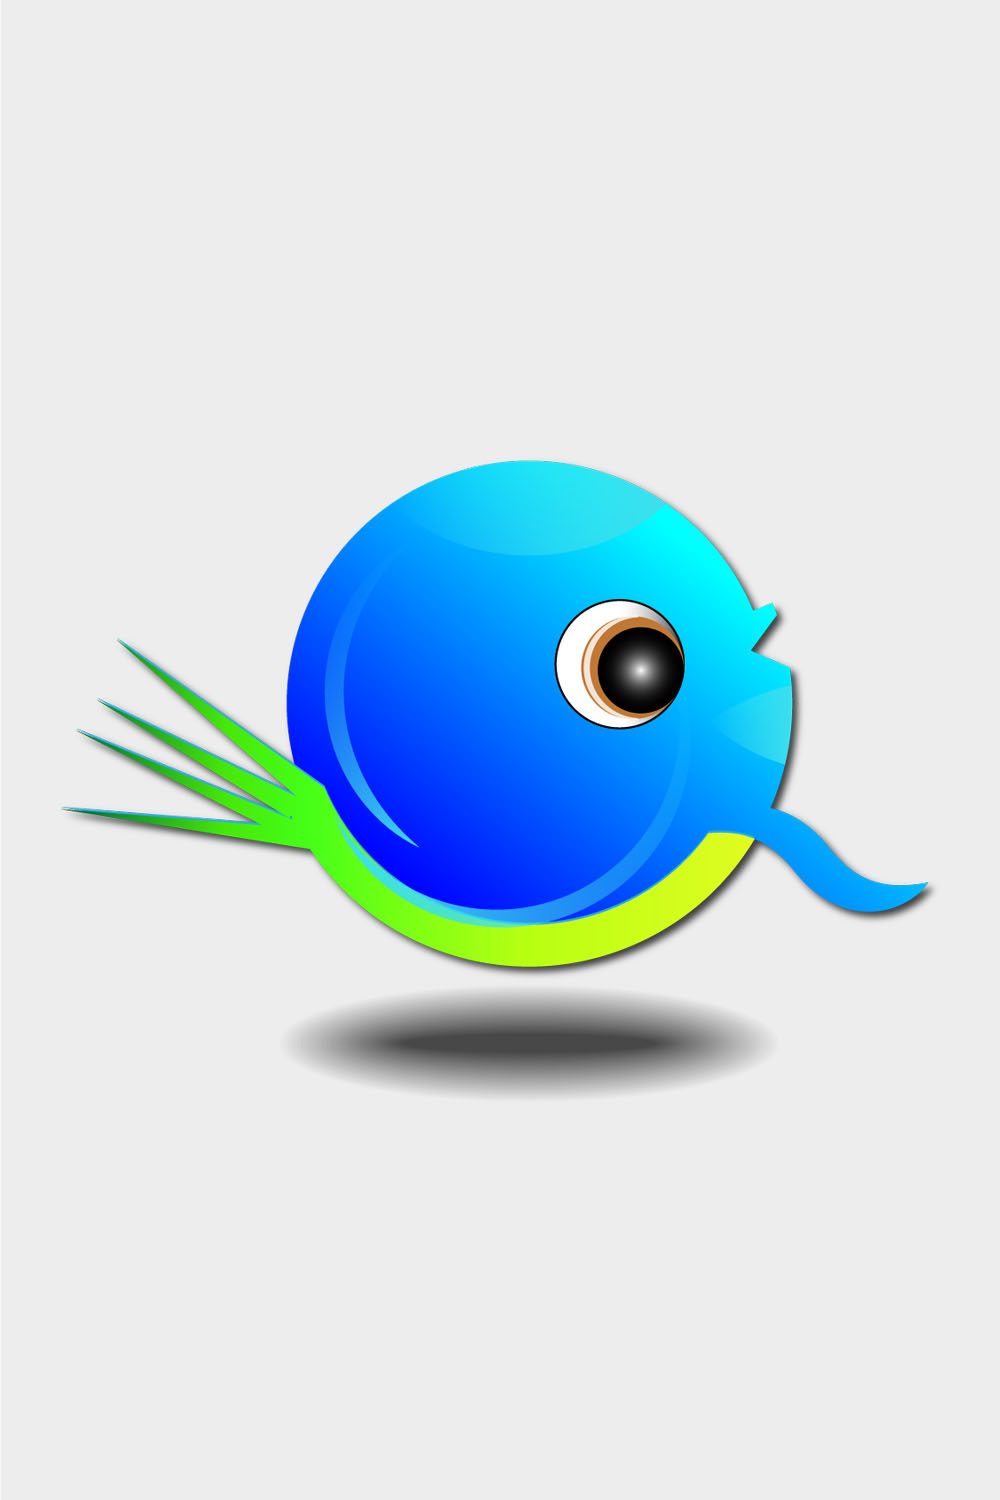 azure light and green bird logo design vector 128